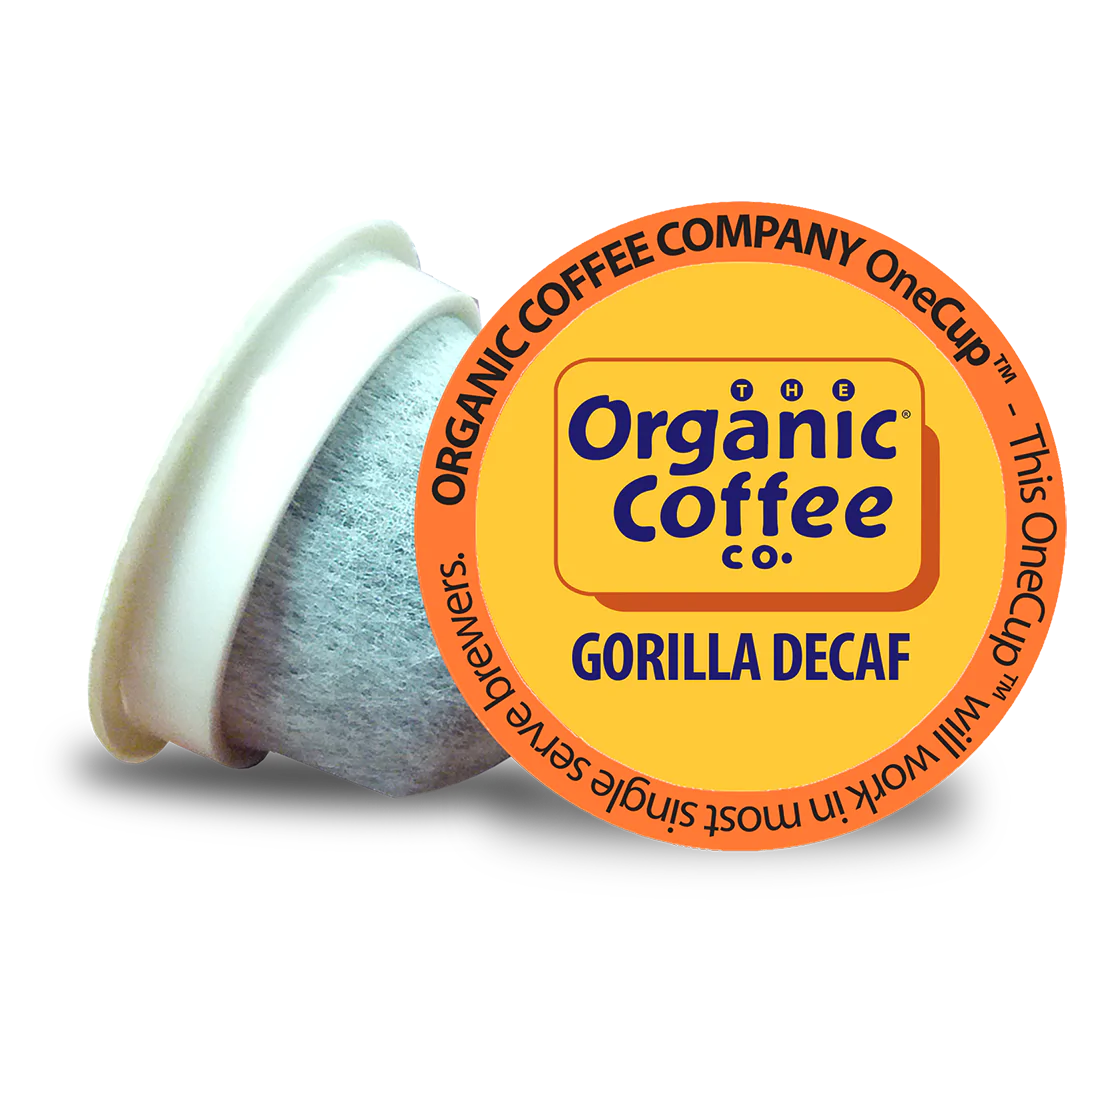 Organic Gorilla Decaf